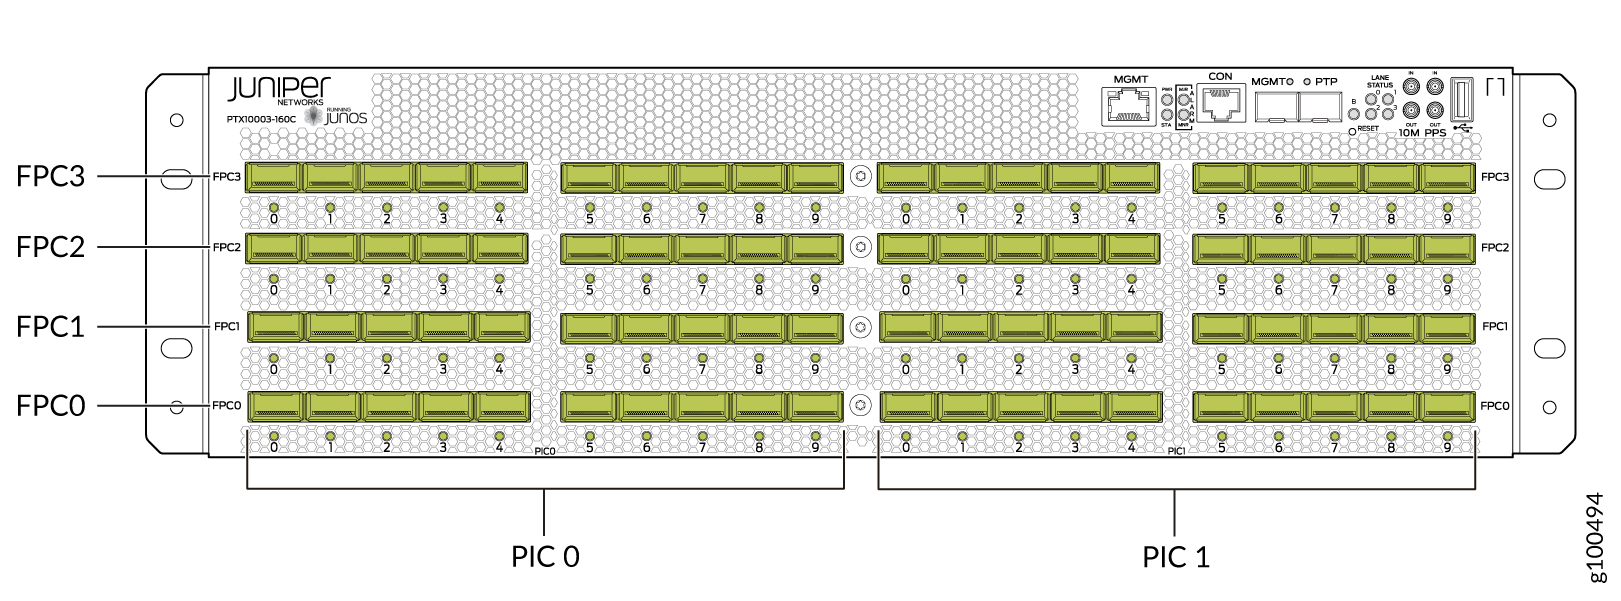 PTX10003-160C Port Panel